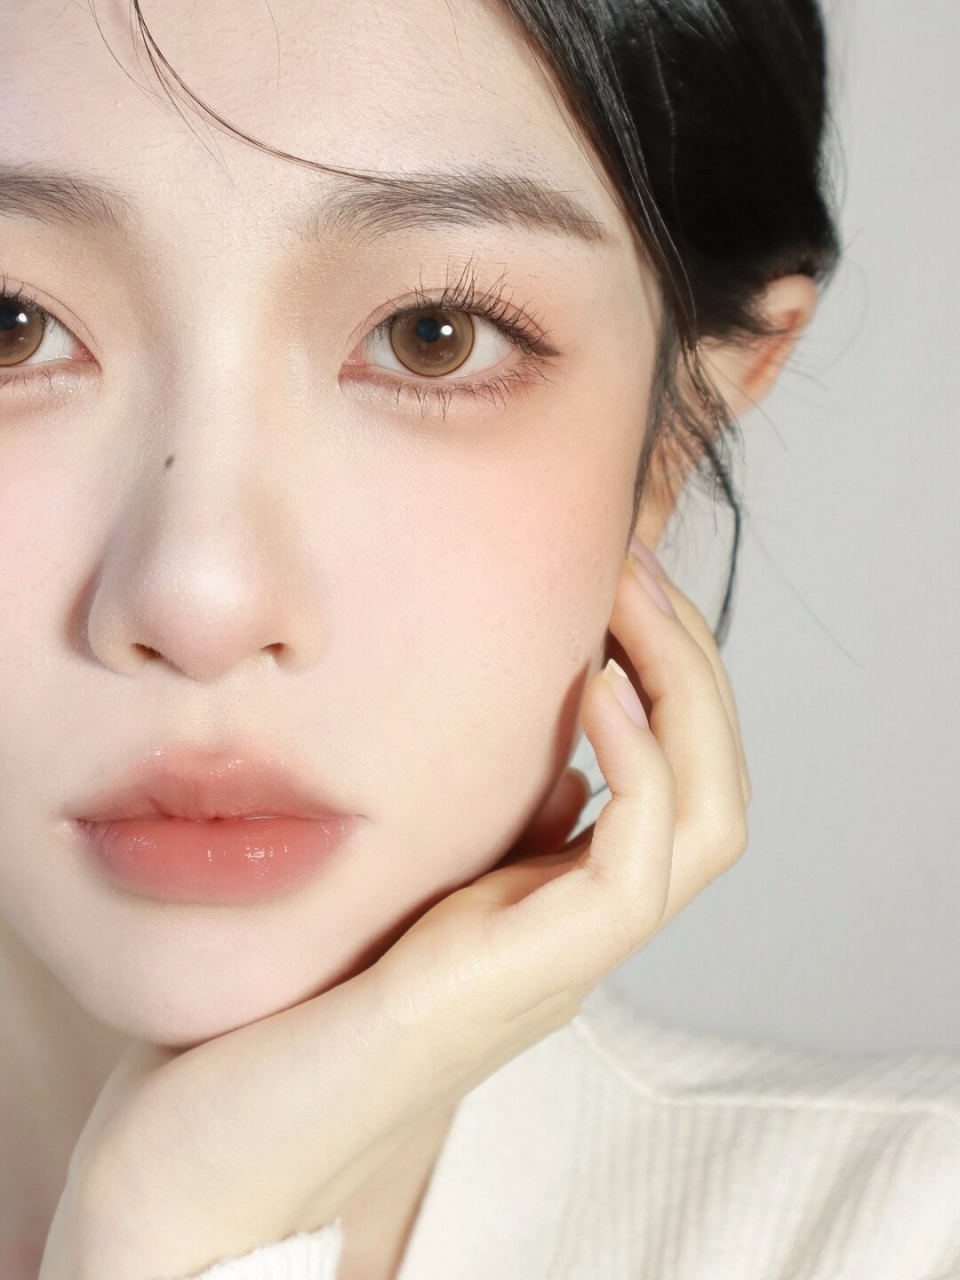 韩系氧气妆  作为一款韩系妆容,我注重的是皮肤的自然光泽和清透感